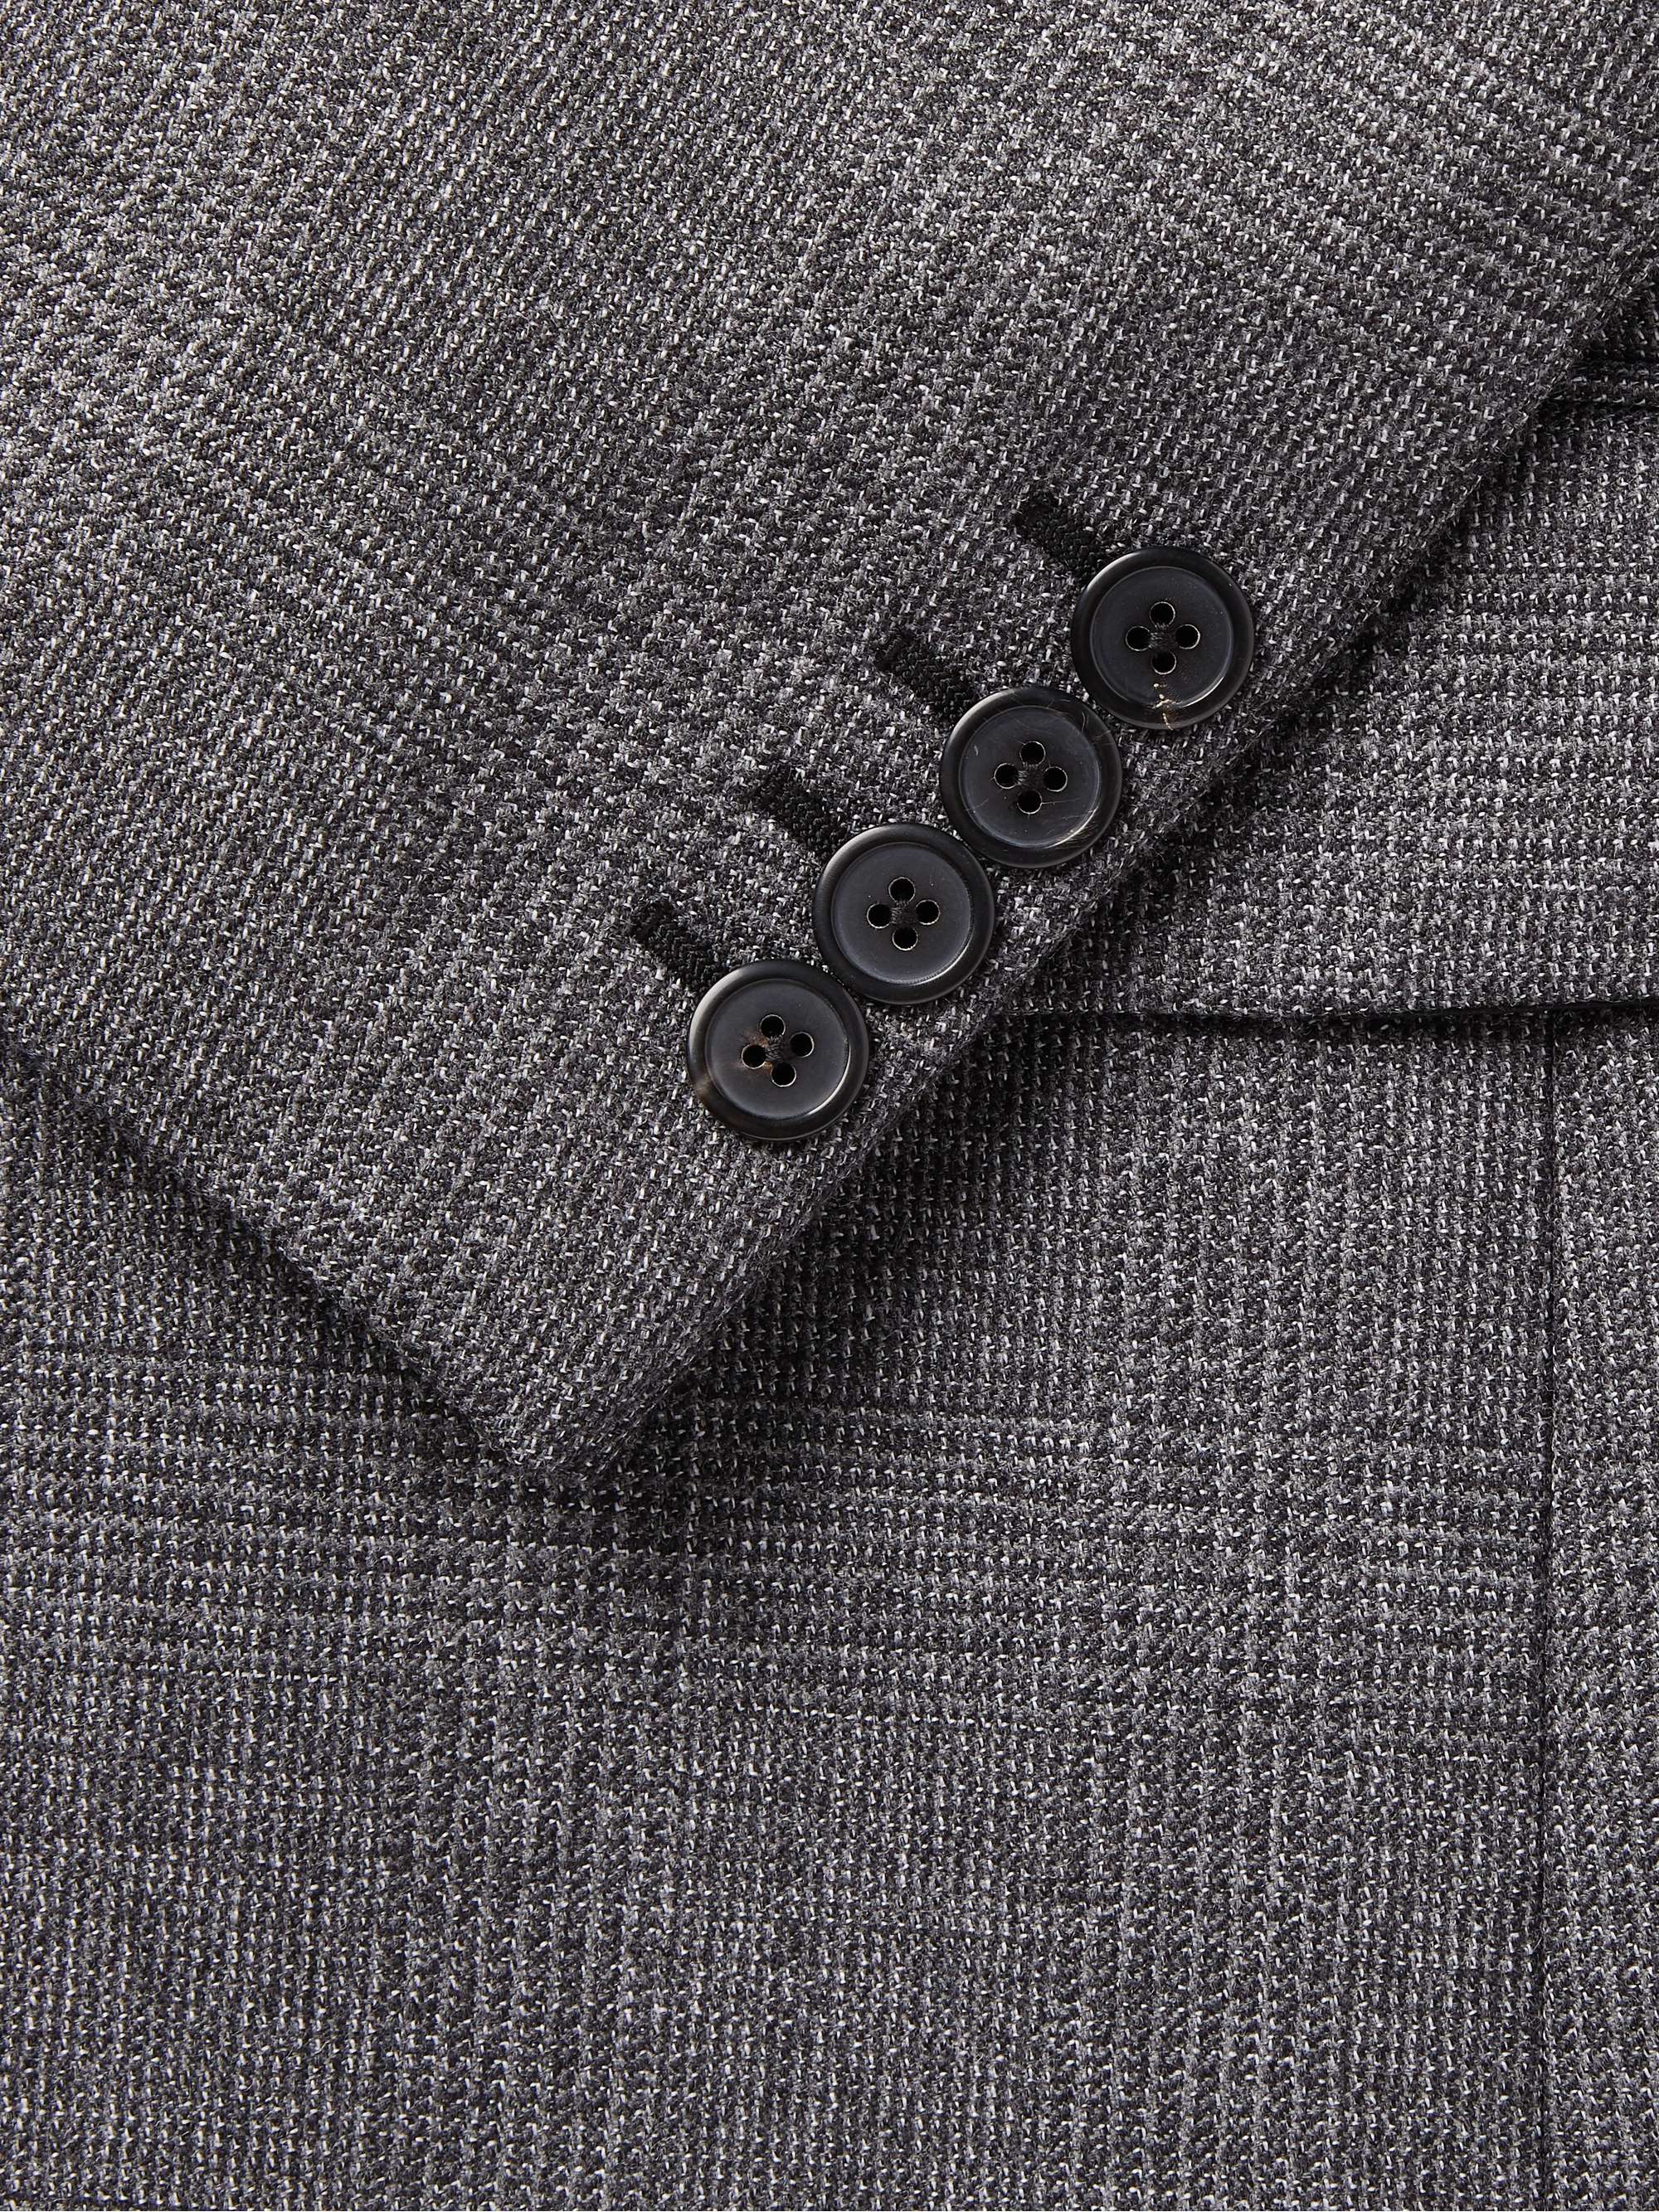 PRADA Grey Prince of Wales Checked Virgin Wool-Blend Suit Jacket